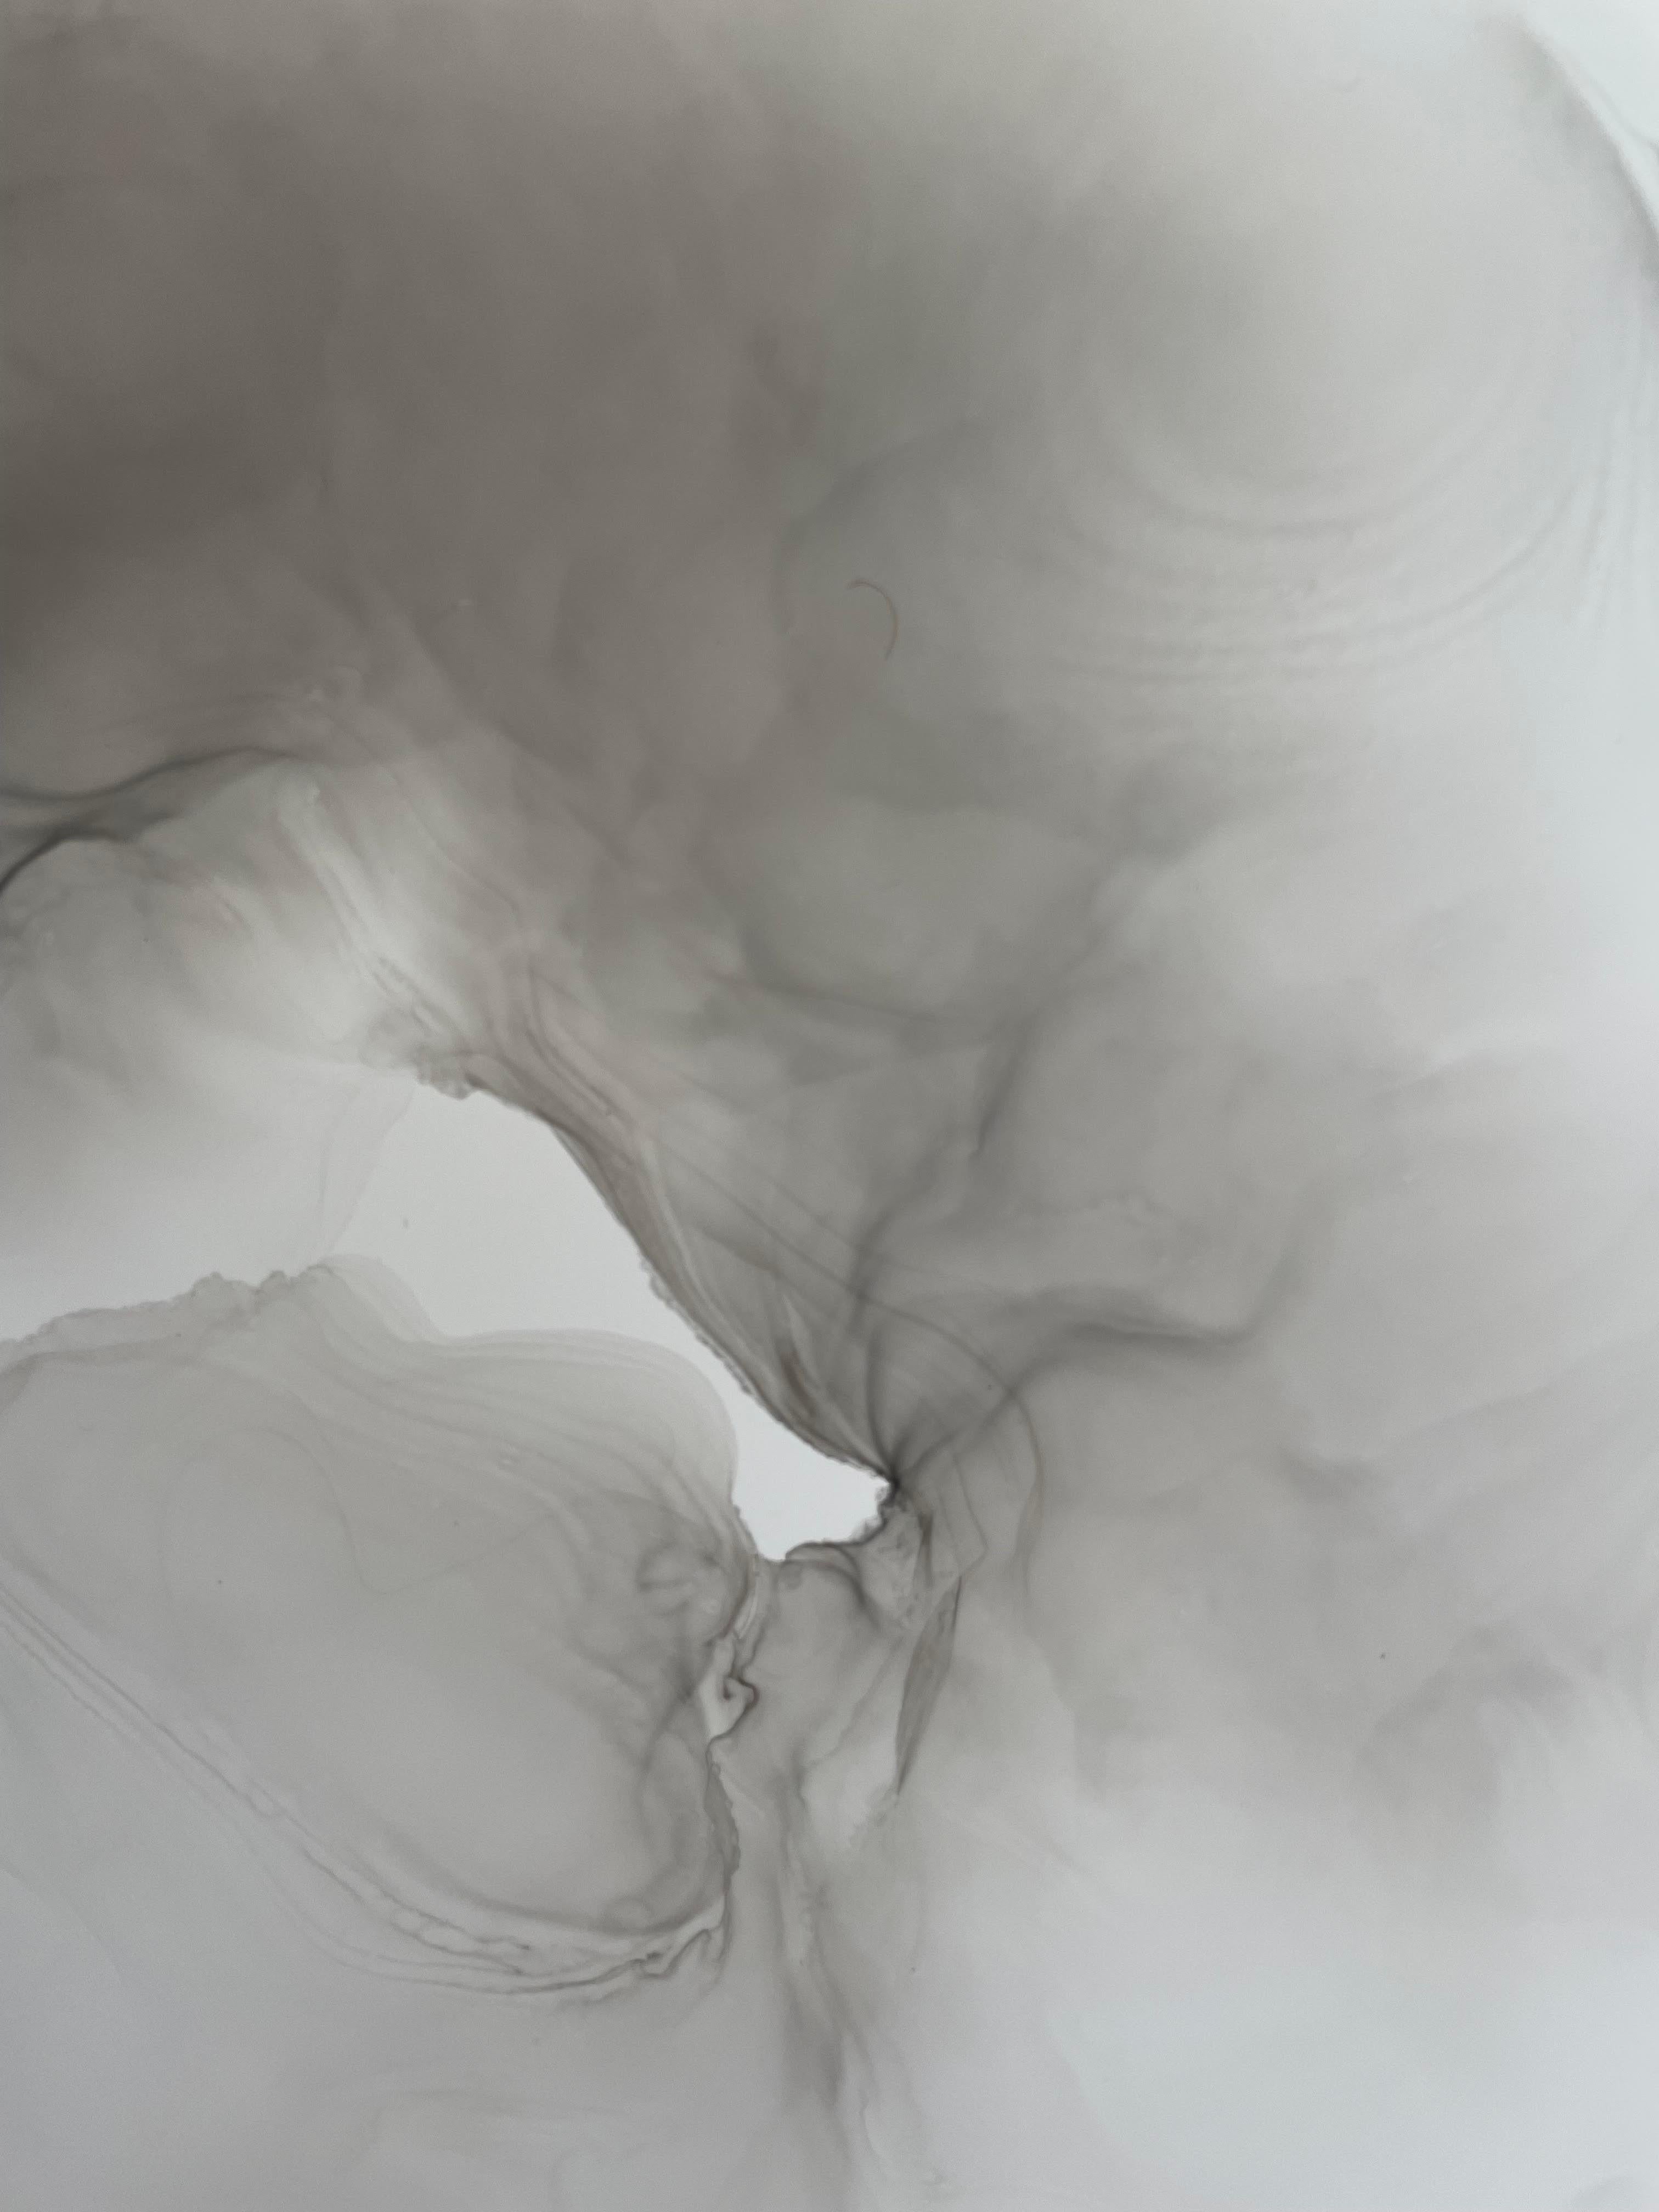 Innenarchitektur-Gemälde. Das Diptychon ist mit Tusche in schwarzer und grauer Farbe auf Yupo-Papier gemalt.
Jedes Werk ist 11 x 14 Zoll groß, gerahmt (schwarz) mit einer Styrolplatte auf einem Passepartoutkarton in Weiß mit den Maßen 16 x 20